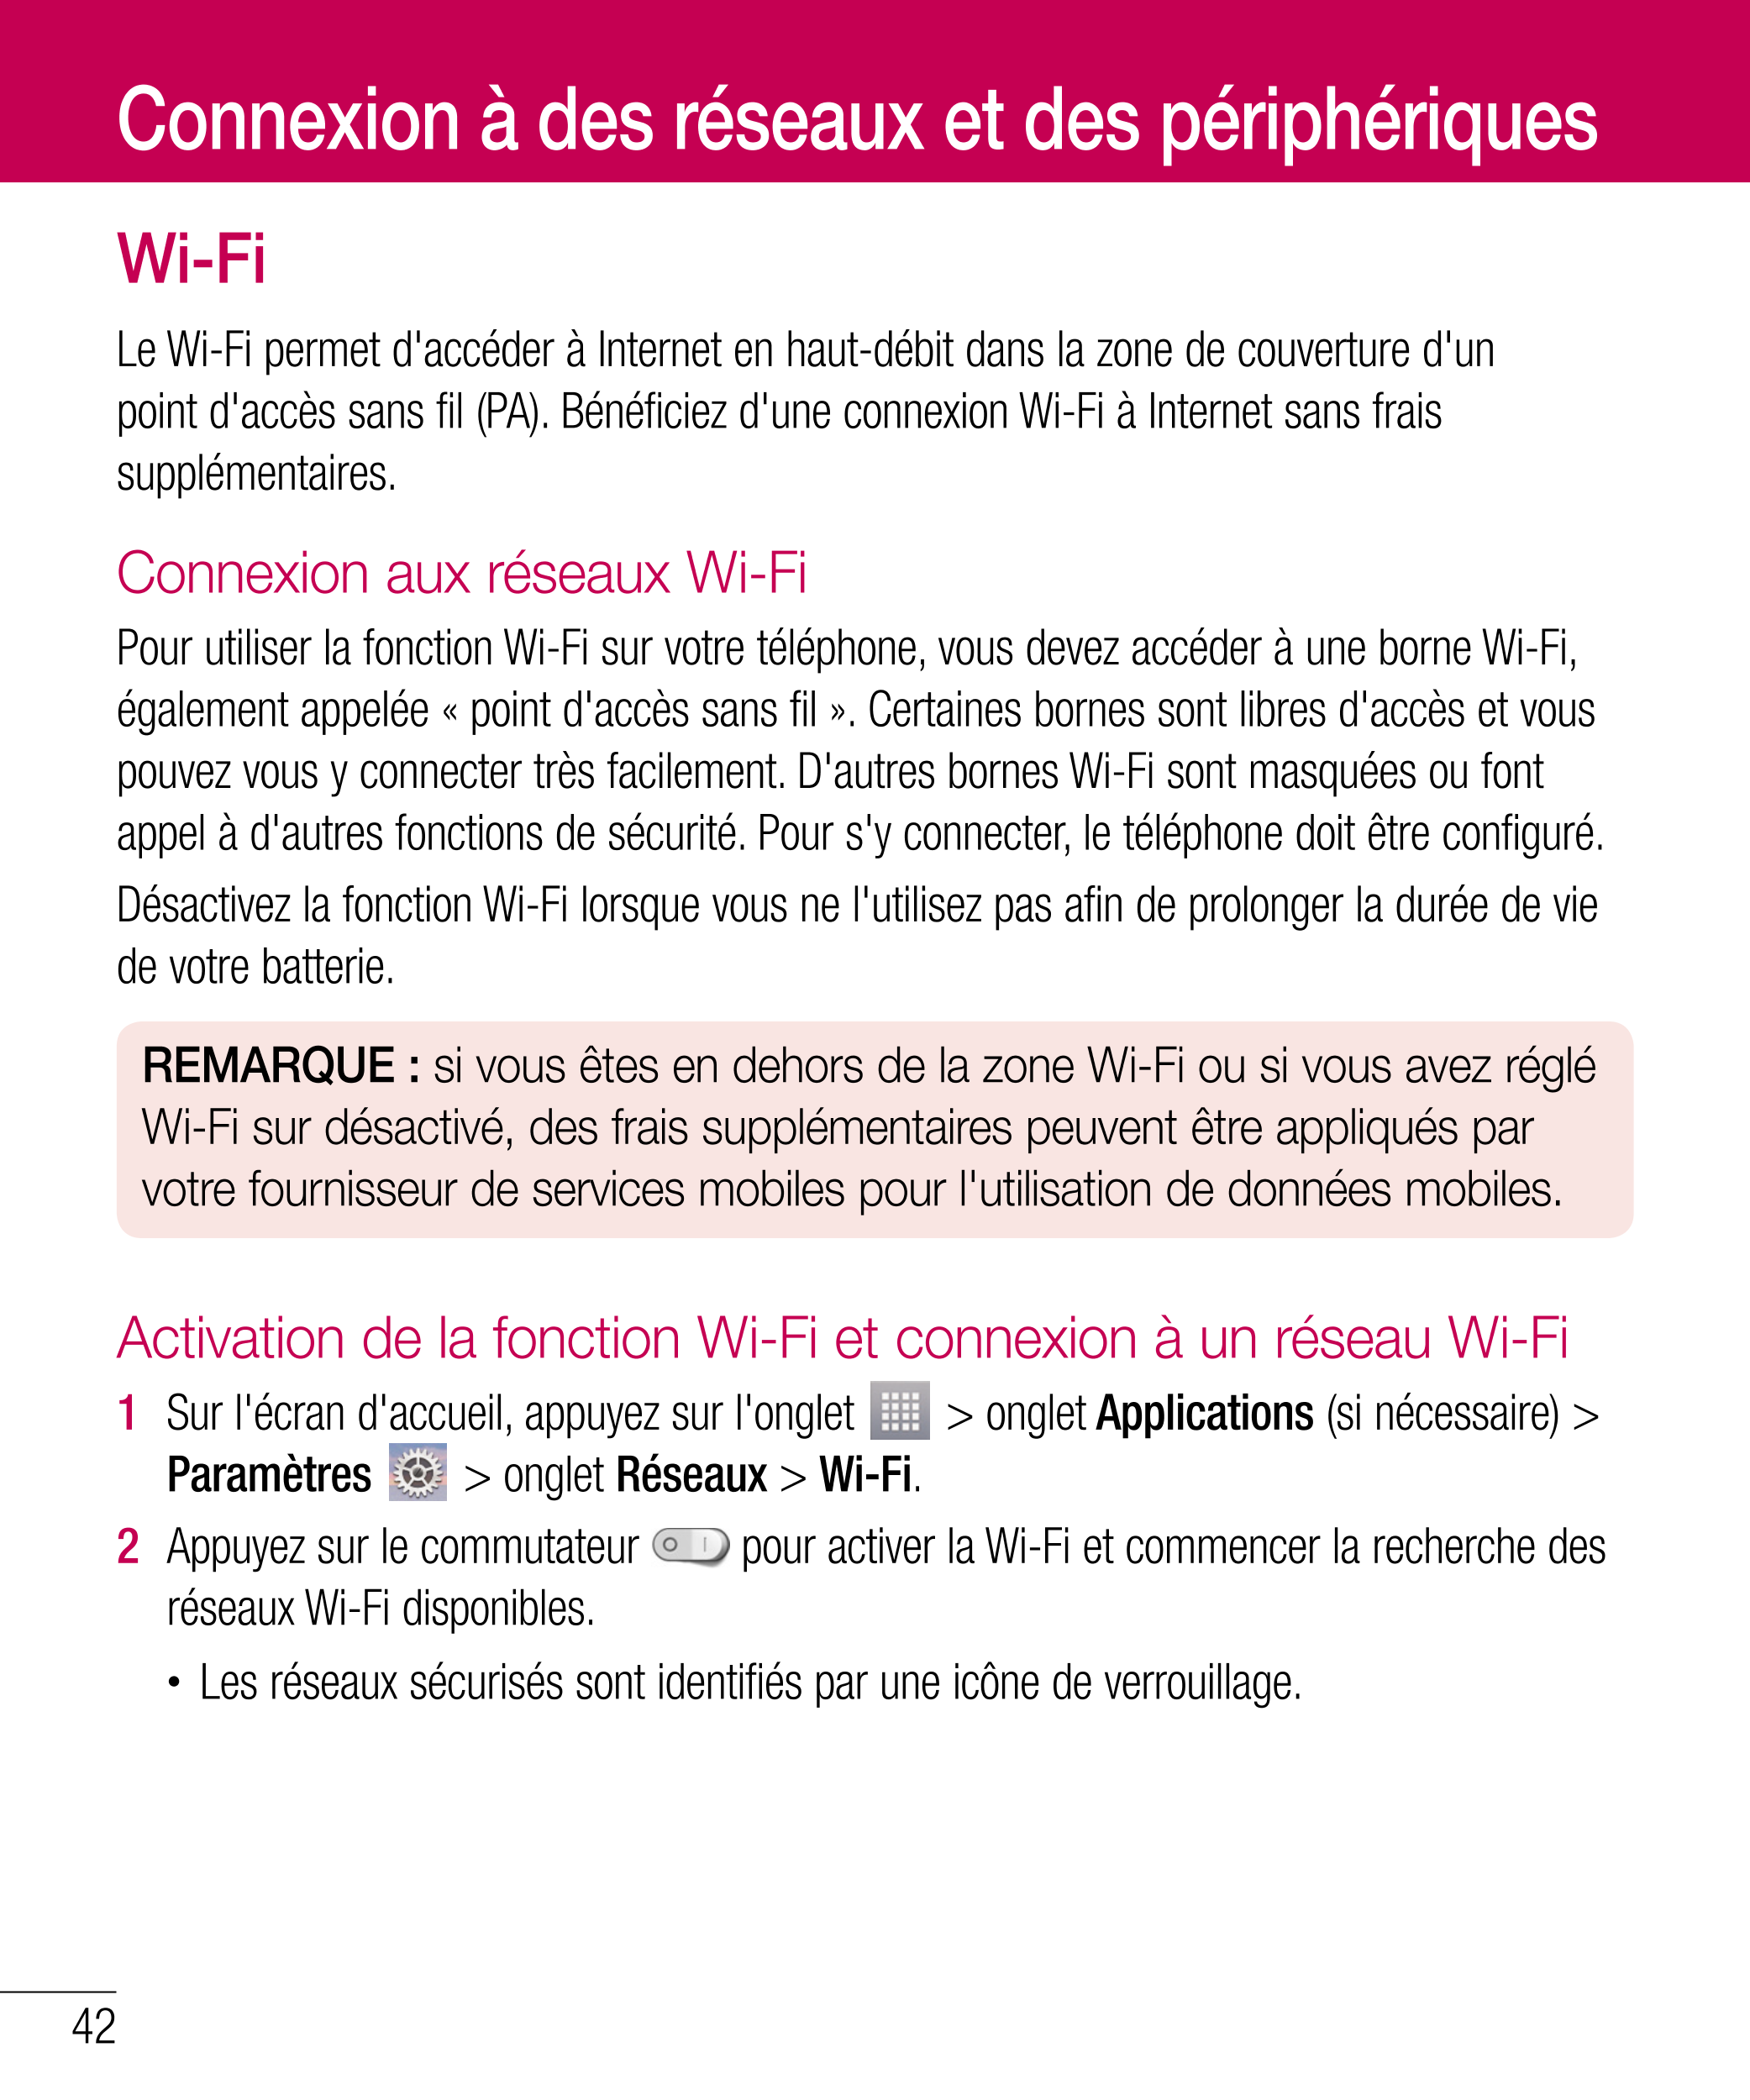 Connexion à des réseaux et des périphériques
Wi-Fi
Le Wi-Fi permet d'accéder à Internet en haut-débit dans la zone de couverture